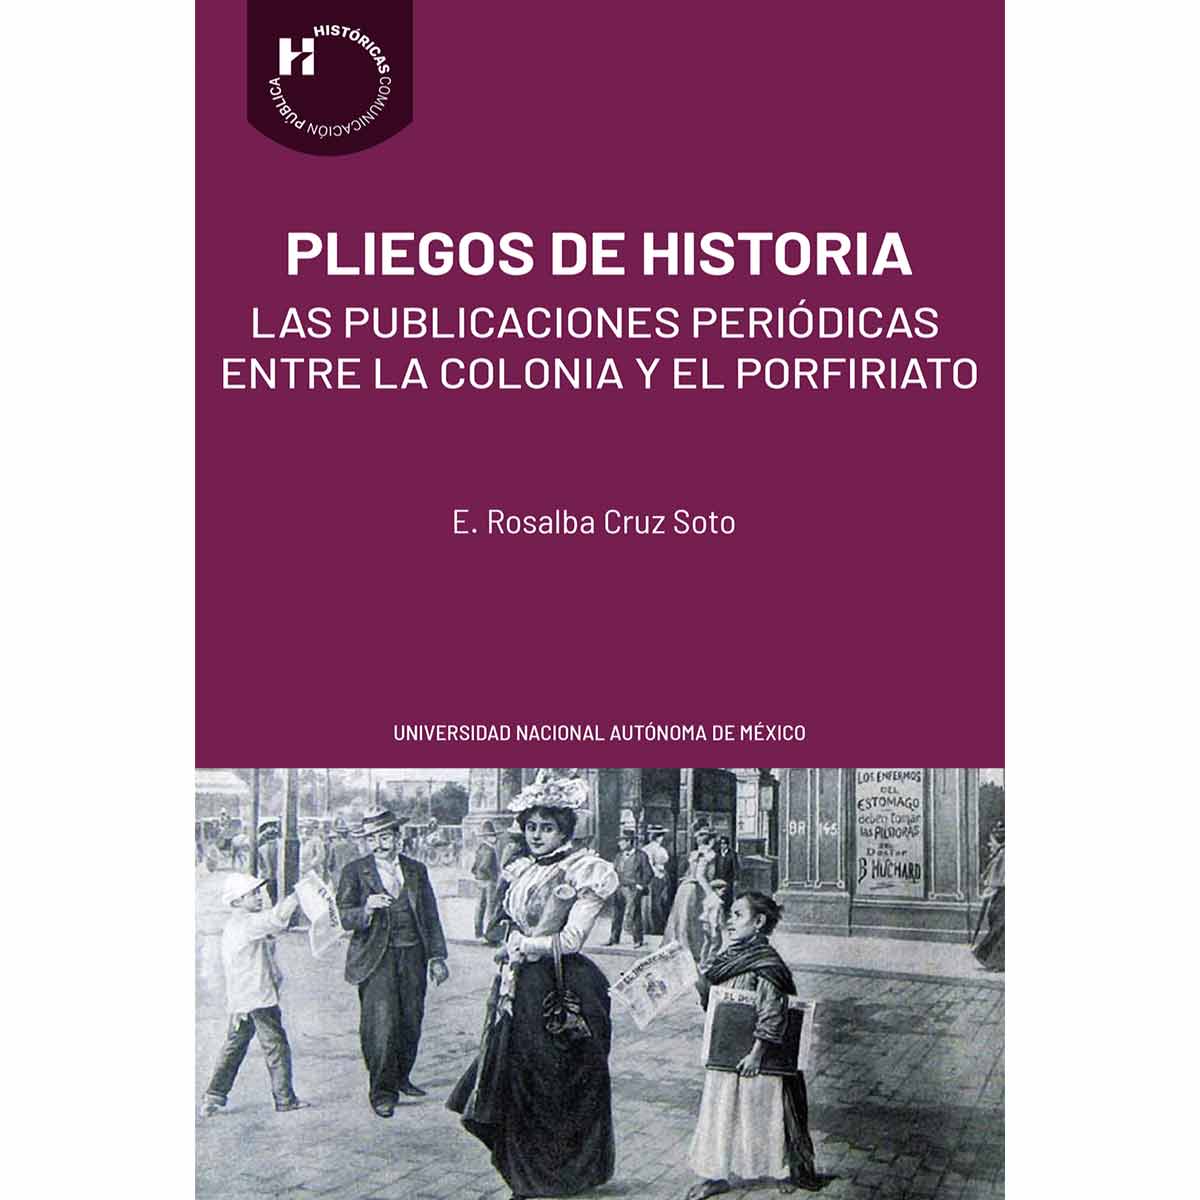 PLIEGOS DE HISTORIA. LAS PUBLICACIONES PERIÓDICAS ENTRE LA COLONIA Y EL PORFIRIATO